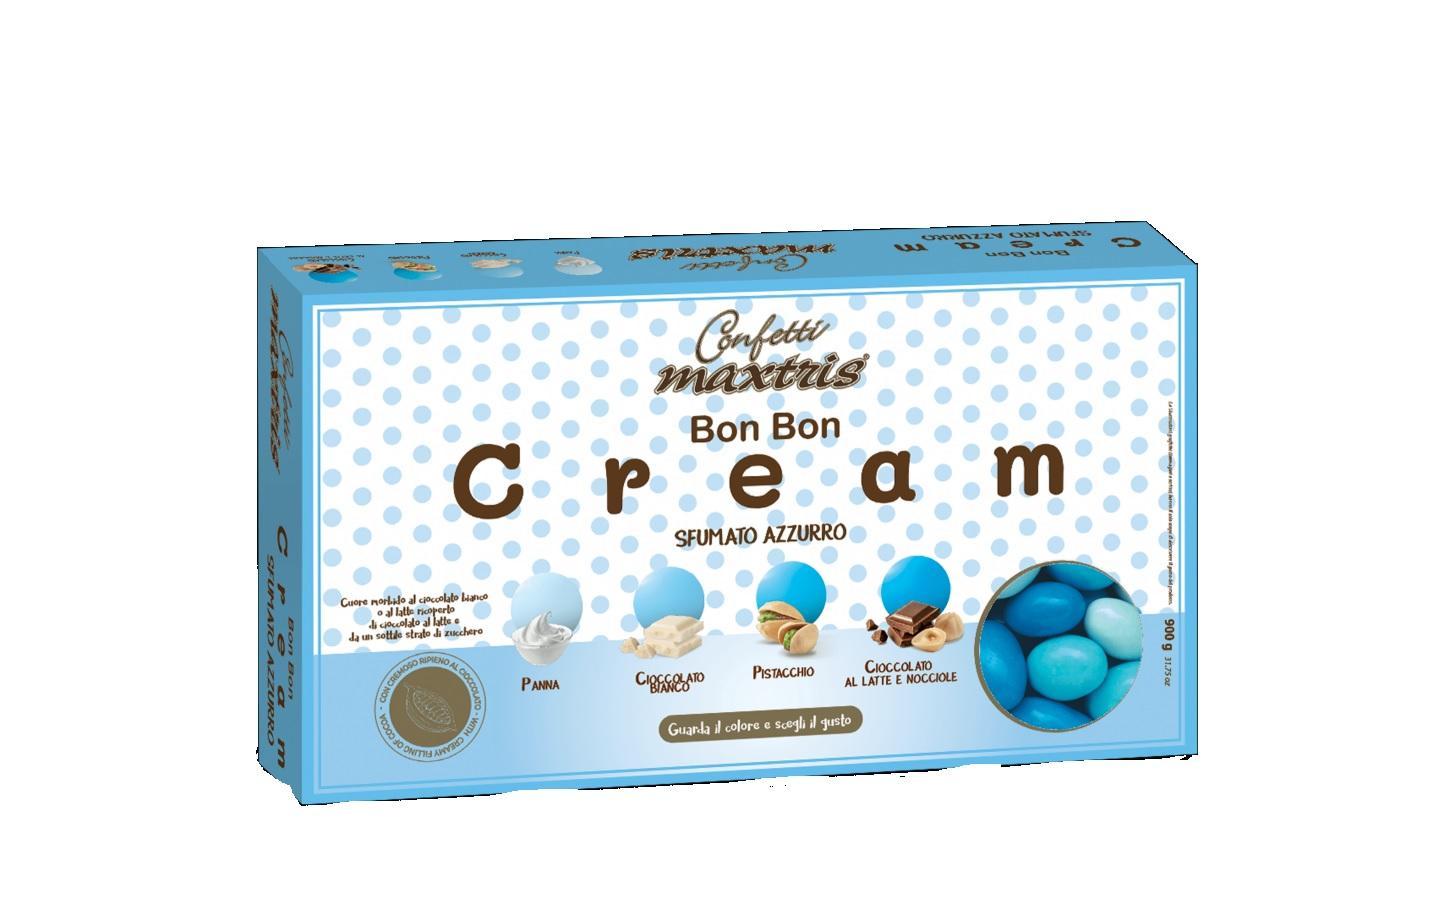 MAXTRIS CONFETTI MAXTRIS BON BON cream sfumato azzurro - 900 GR